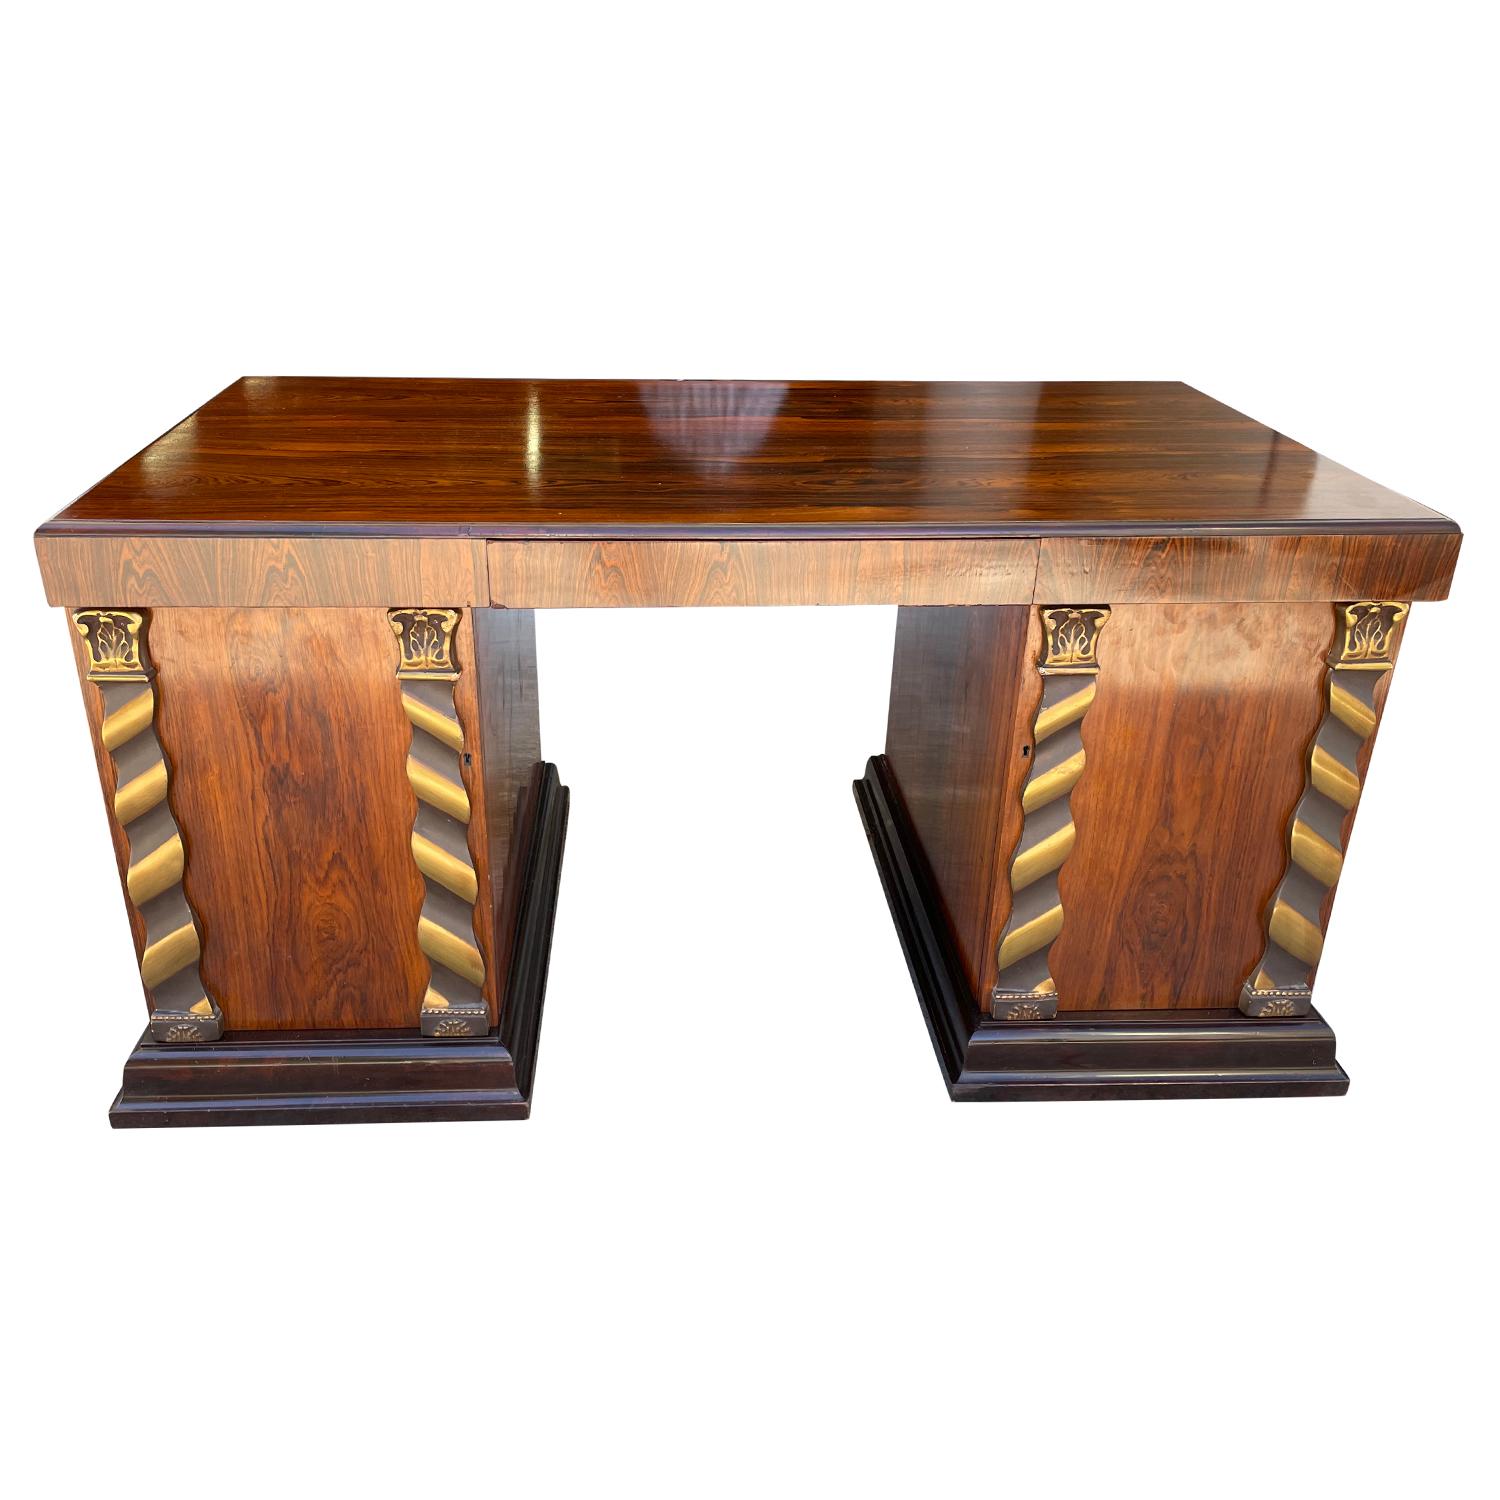 Freistehender, schwedischer Art Deco-Schreibtisch aus handgefertigtem, poliertem Jacaranda-Holz, in gutem Zustand. Der rechteckige skandinavische Schreibtisch hat eine große Schublade in der Mitte und zwei Schranktüren mit detaillierten Bronze- und